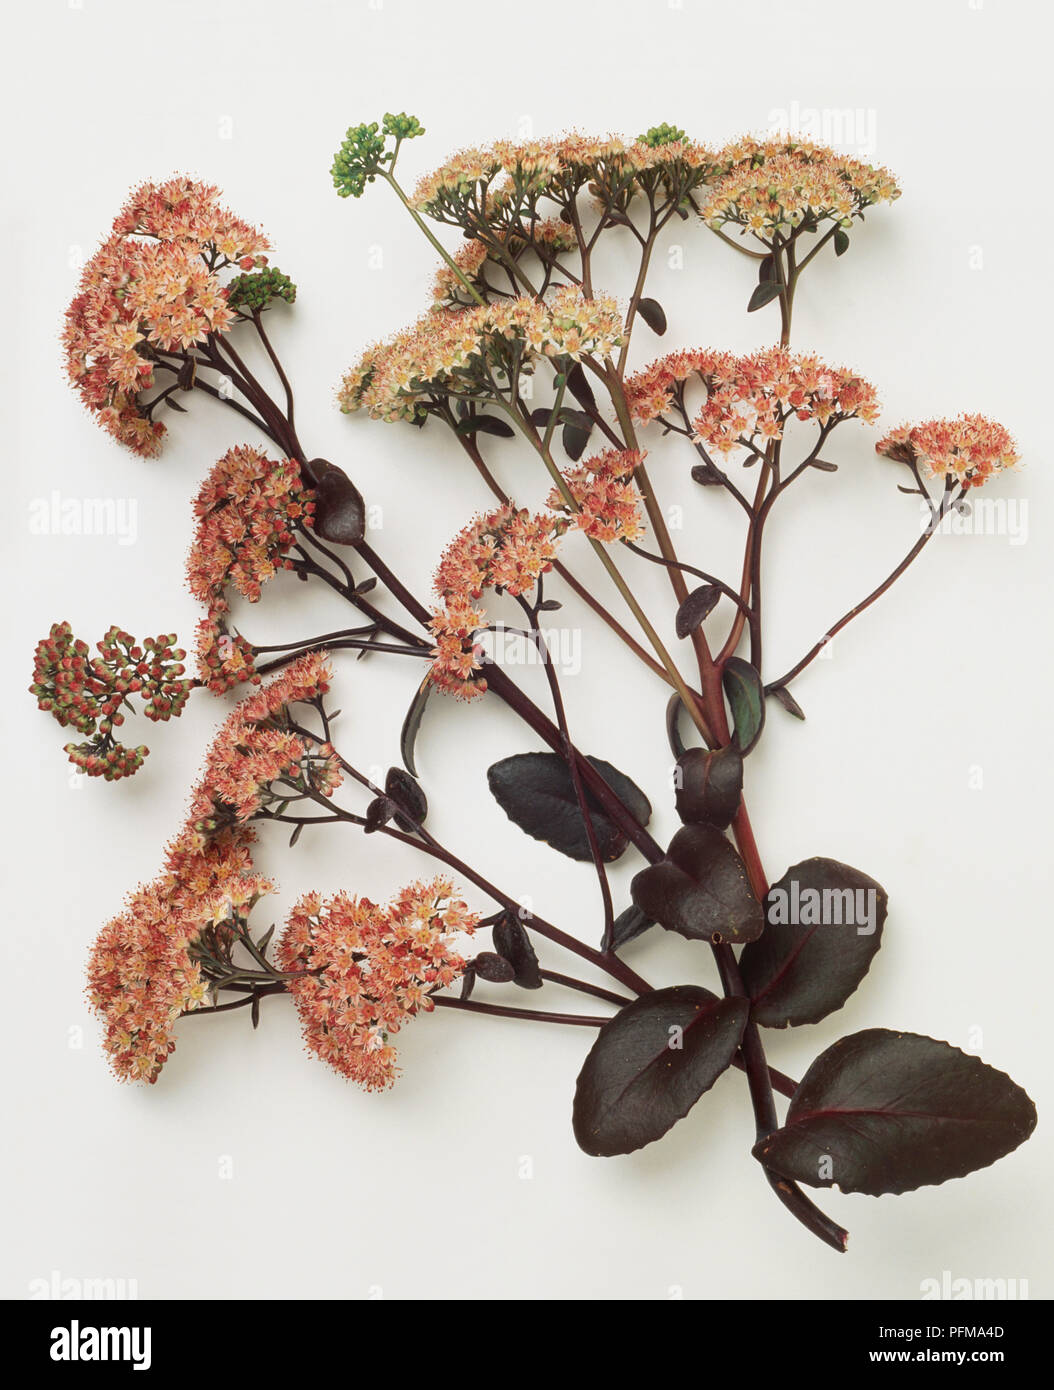 Sedum telephium subsp. maximum 'Atropurpureum' Stock Photo